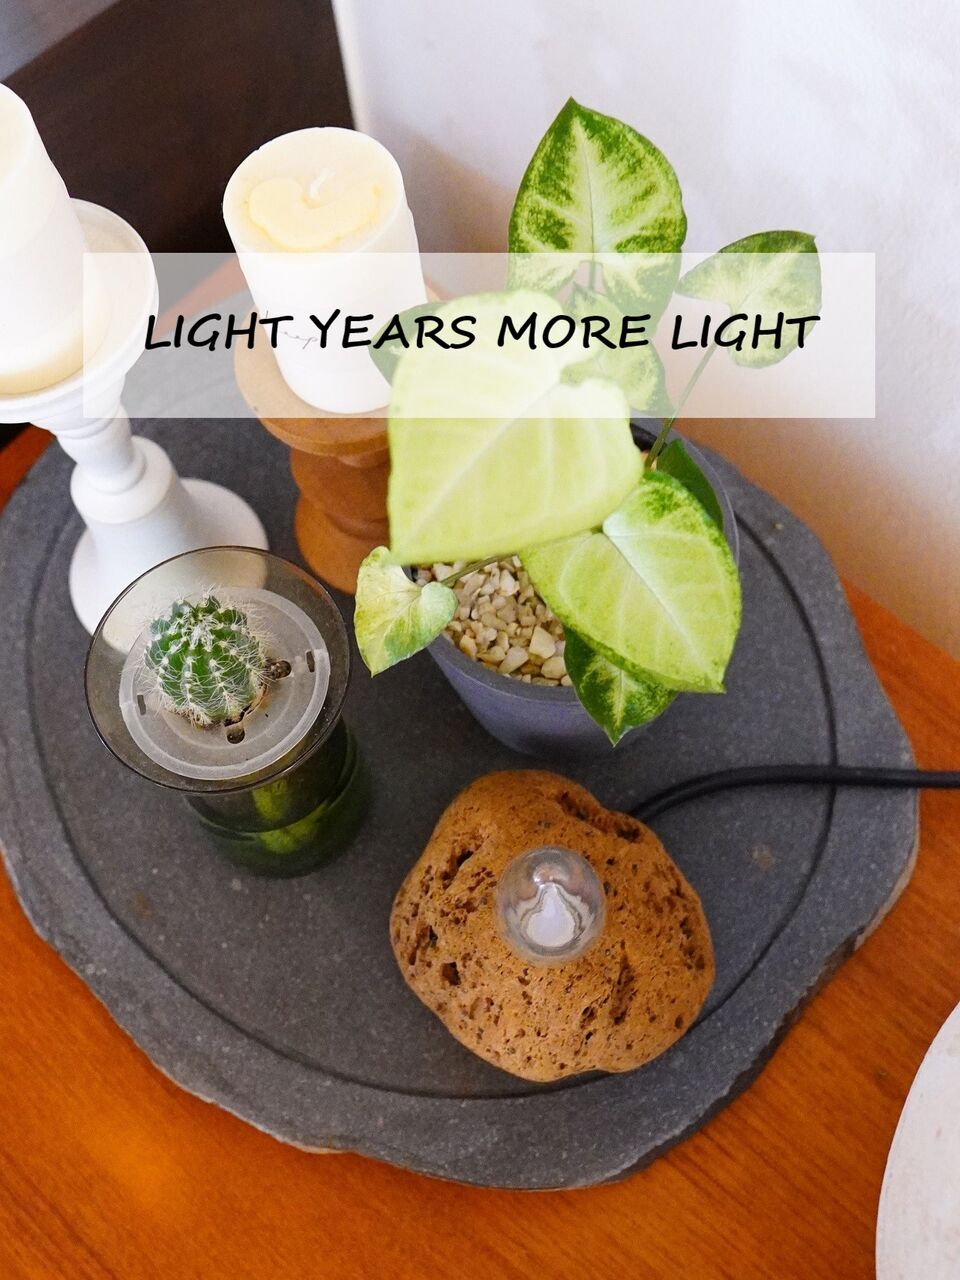 Light years ライトイヤーズ MORE LIGHT モアライト - 天井照明